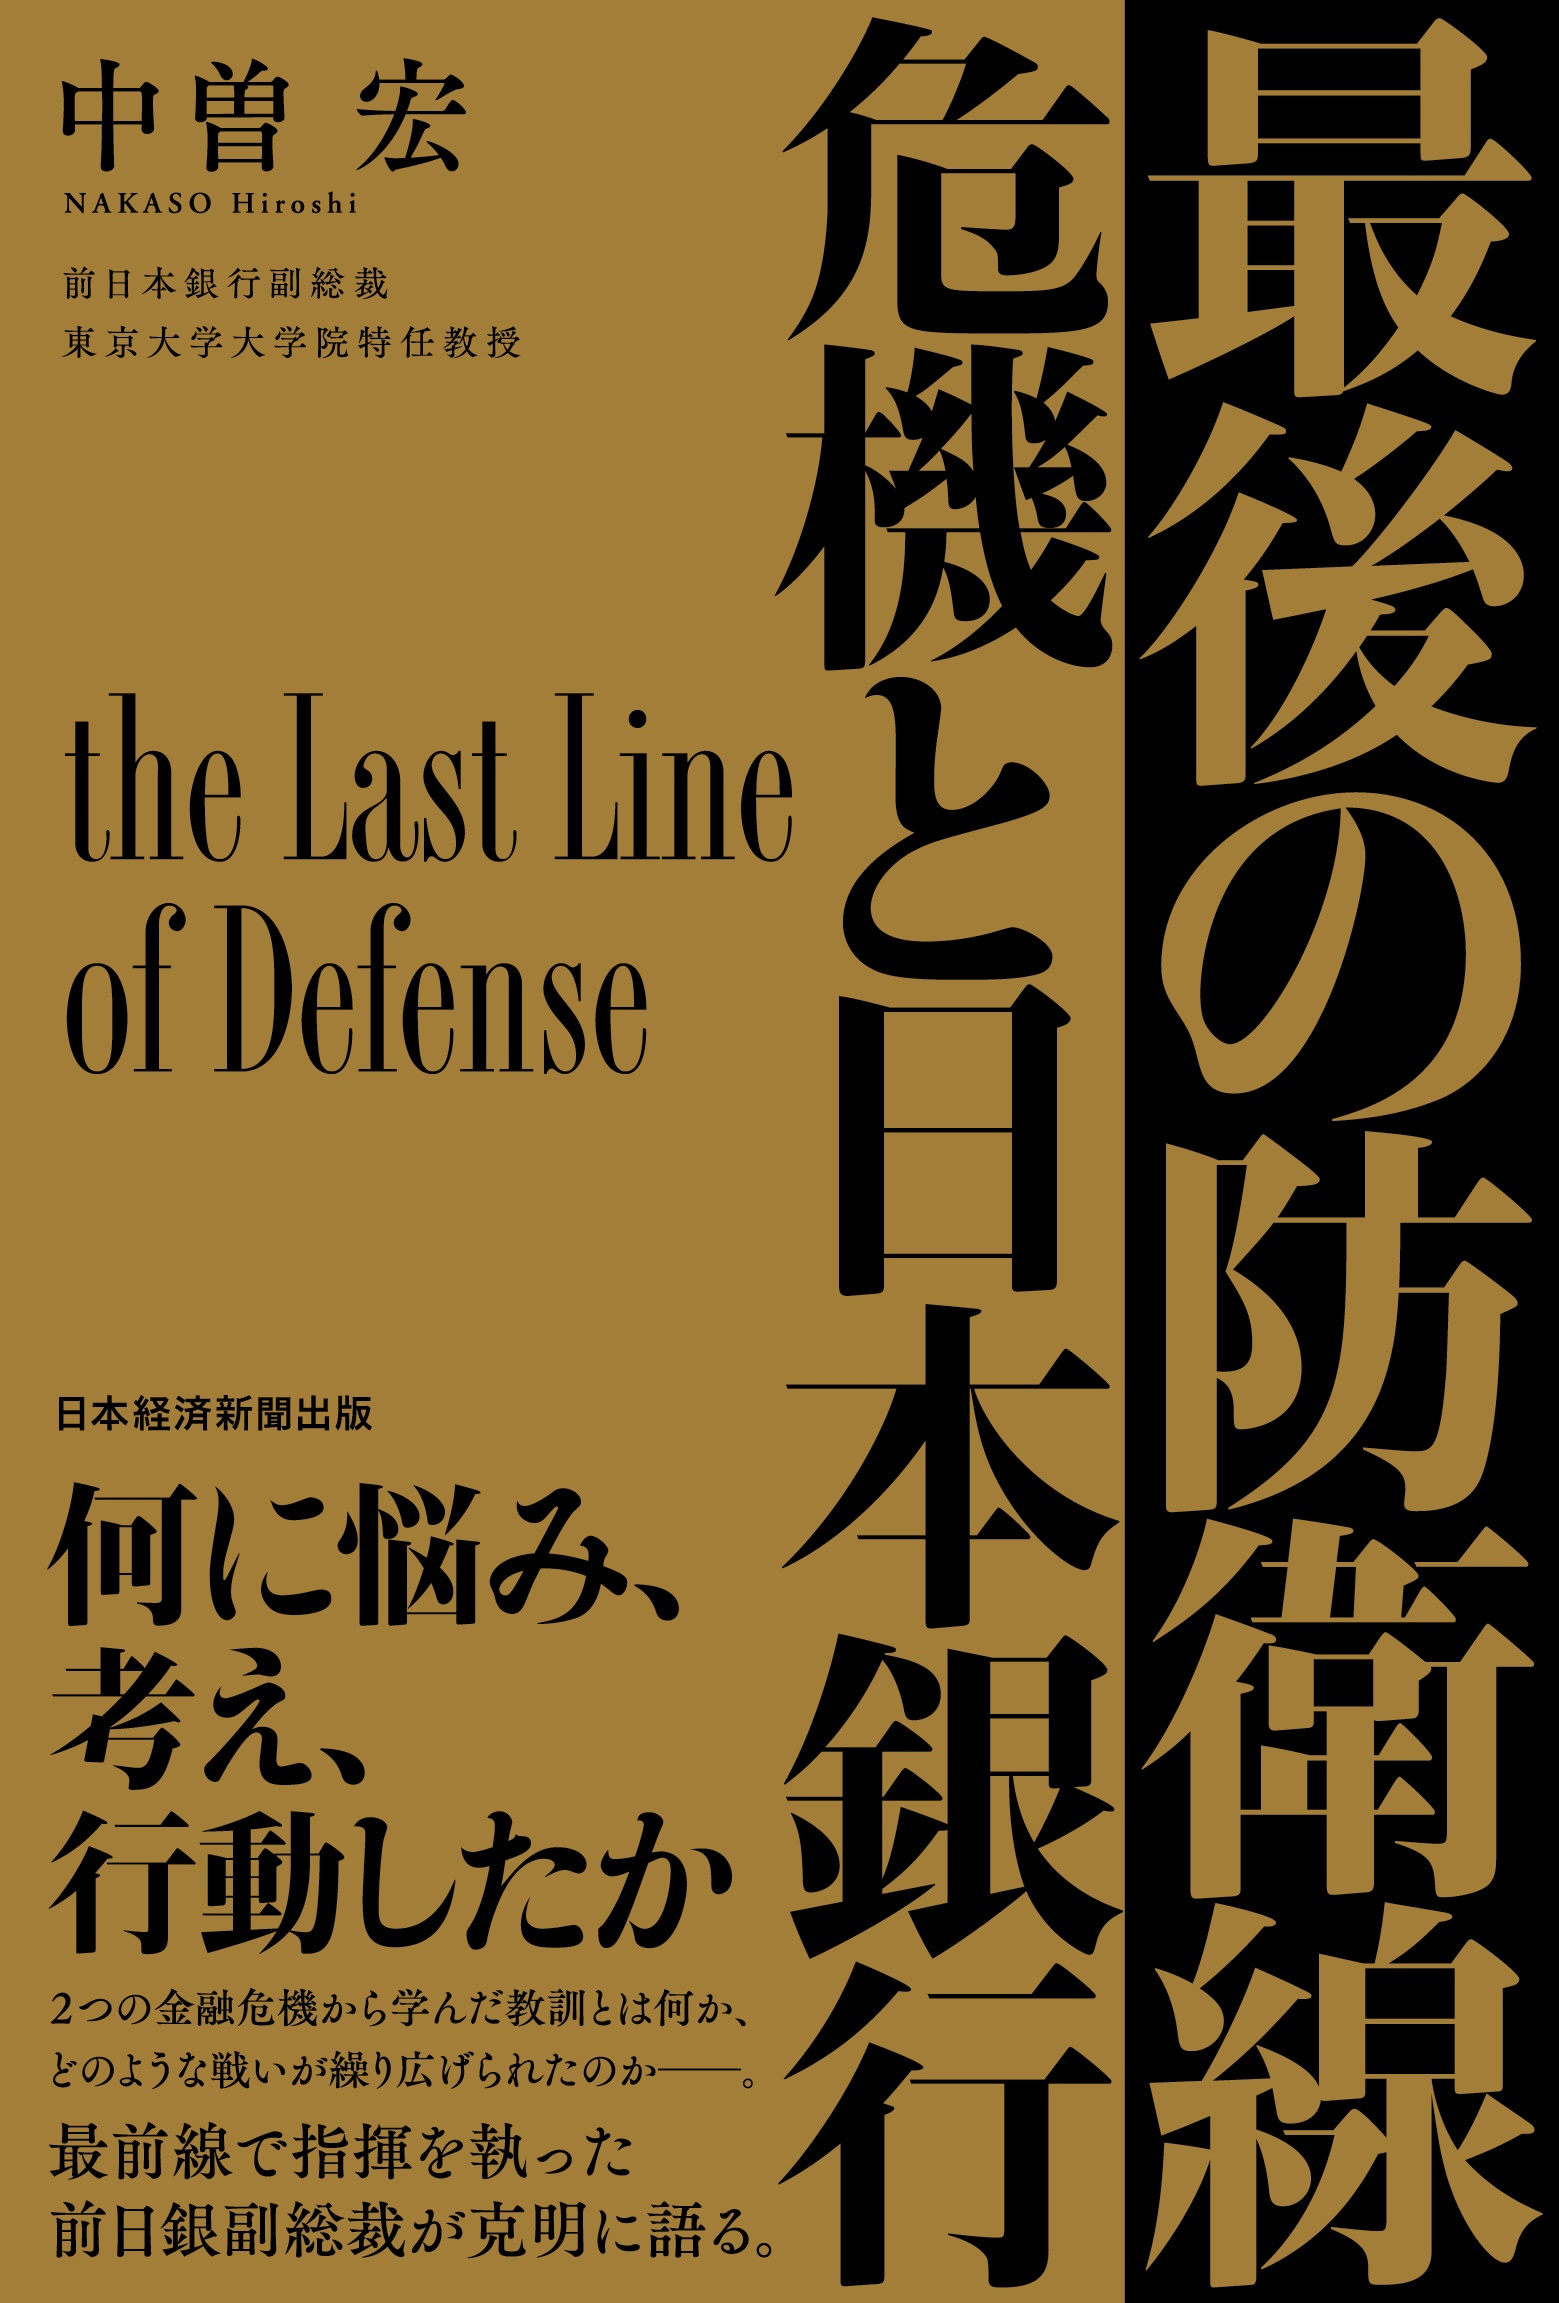 最後の防衛線　危機と日本銀行